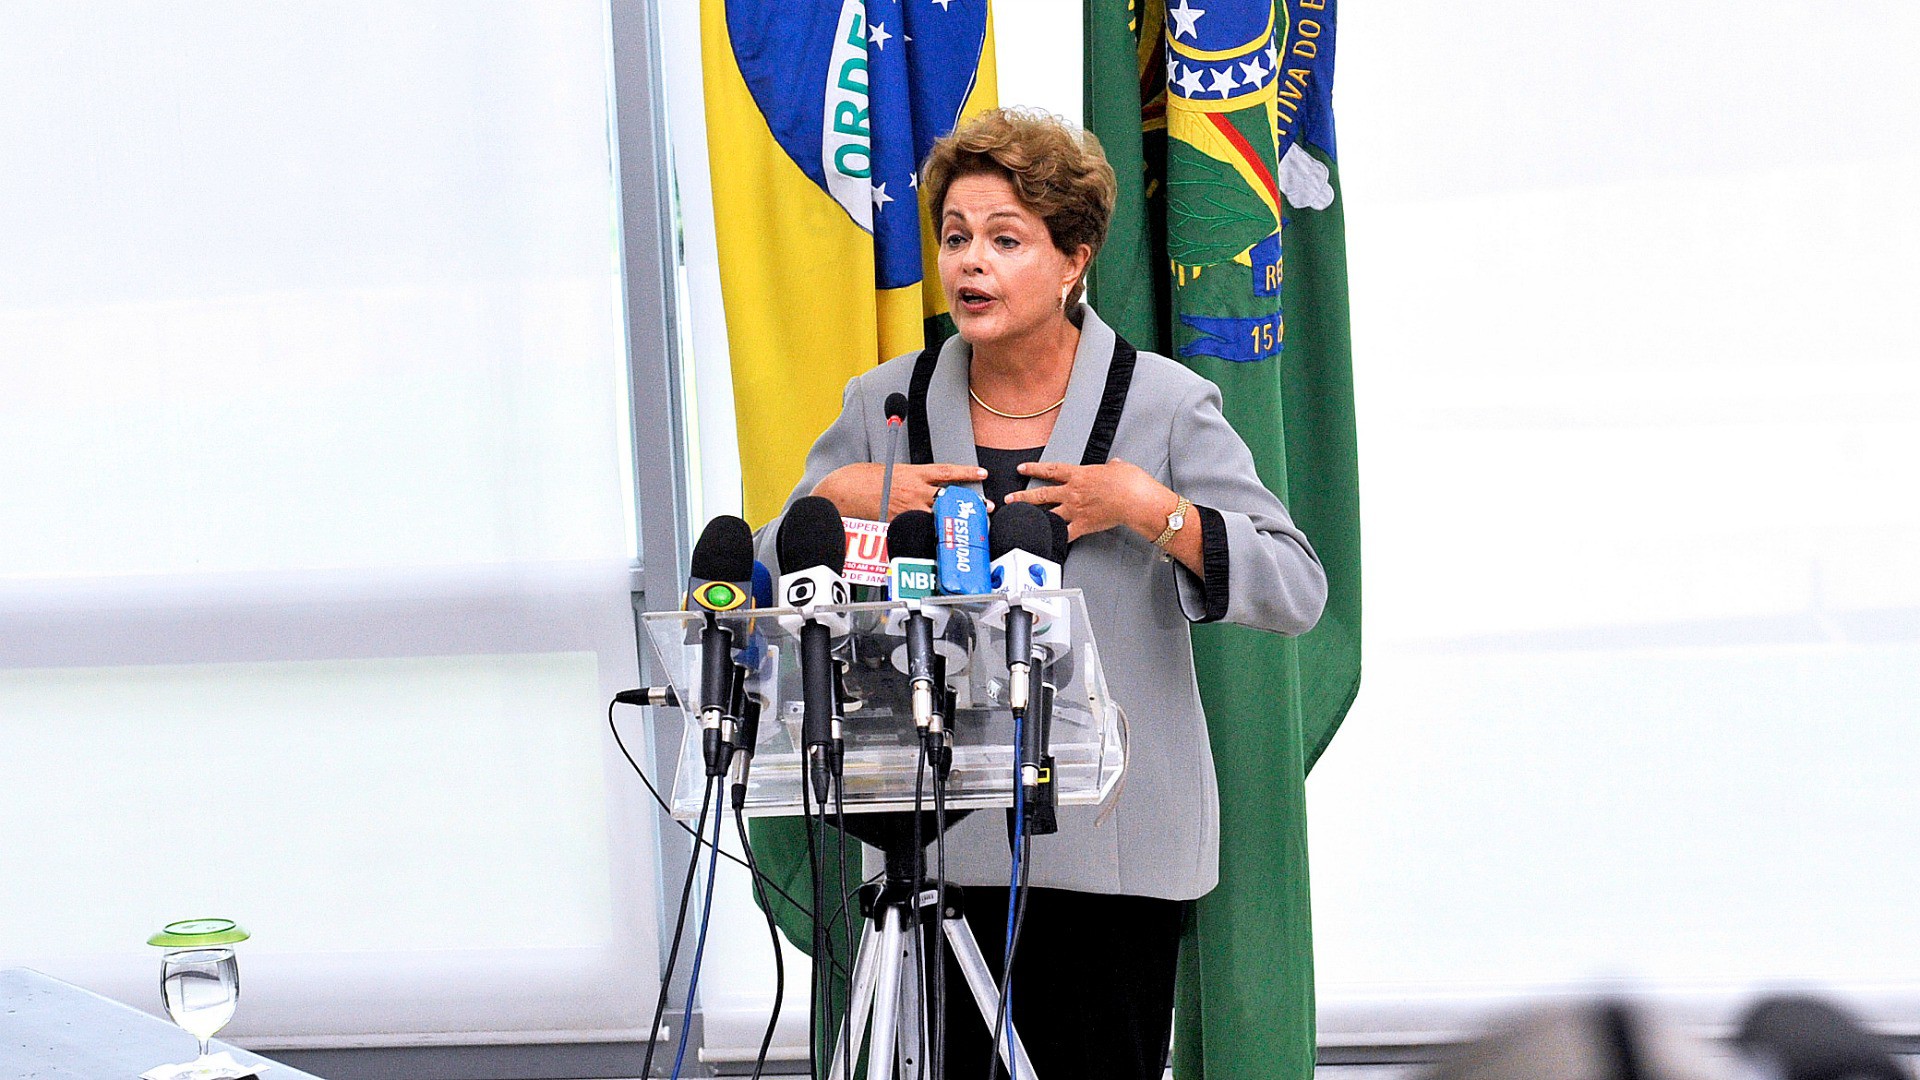 Dilma Rousseff, présidente du Brésil.
(Photo: JFlickr/onas Pereira/CC BY 2.0)